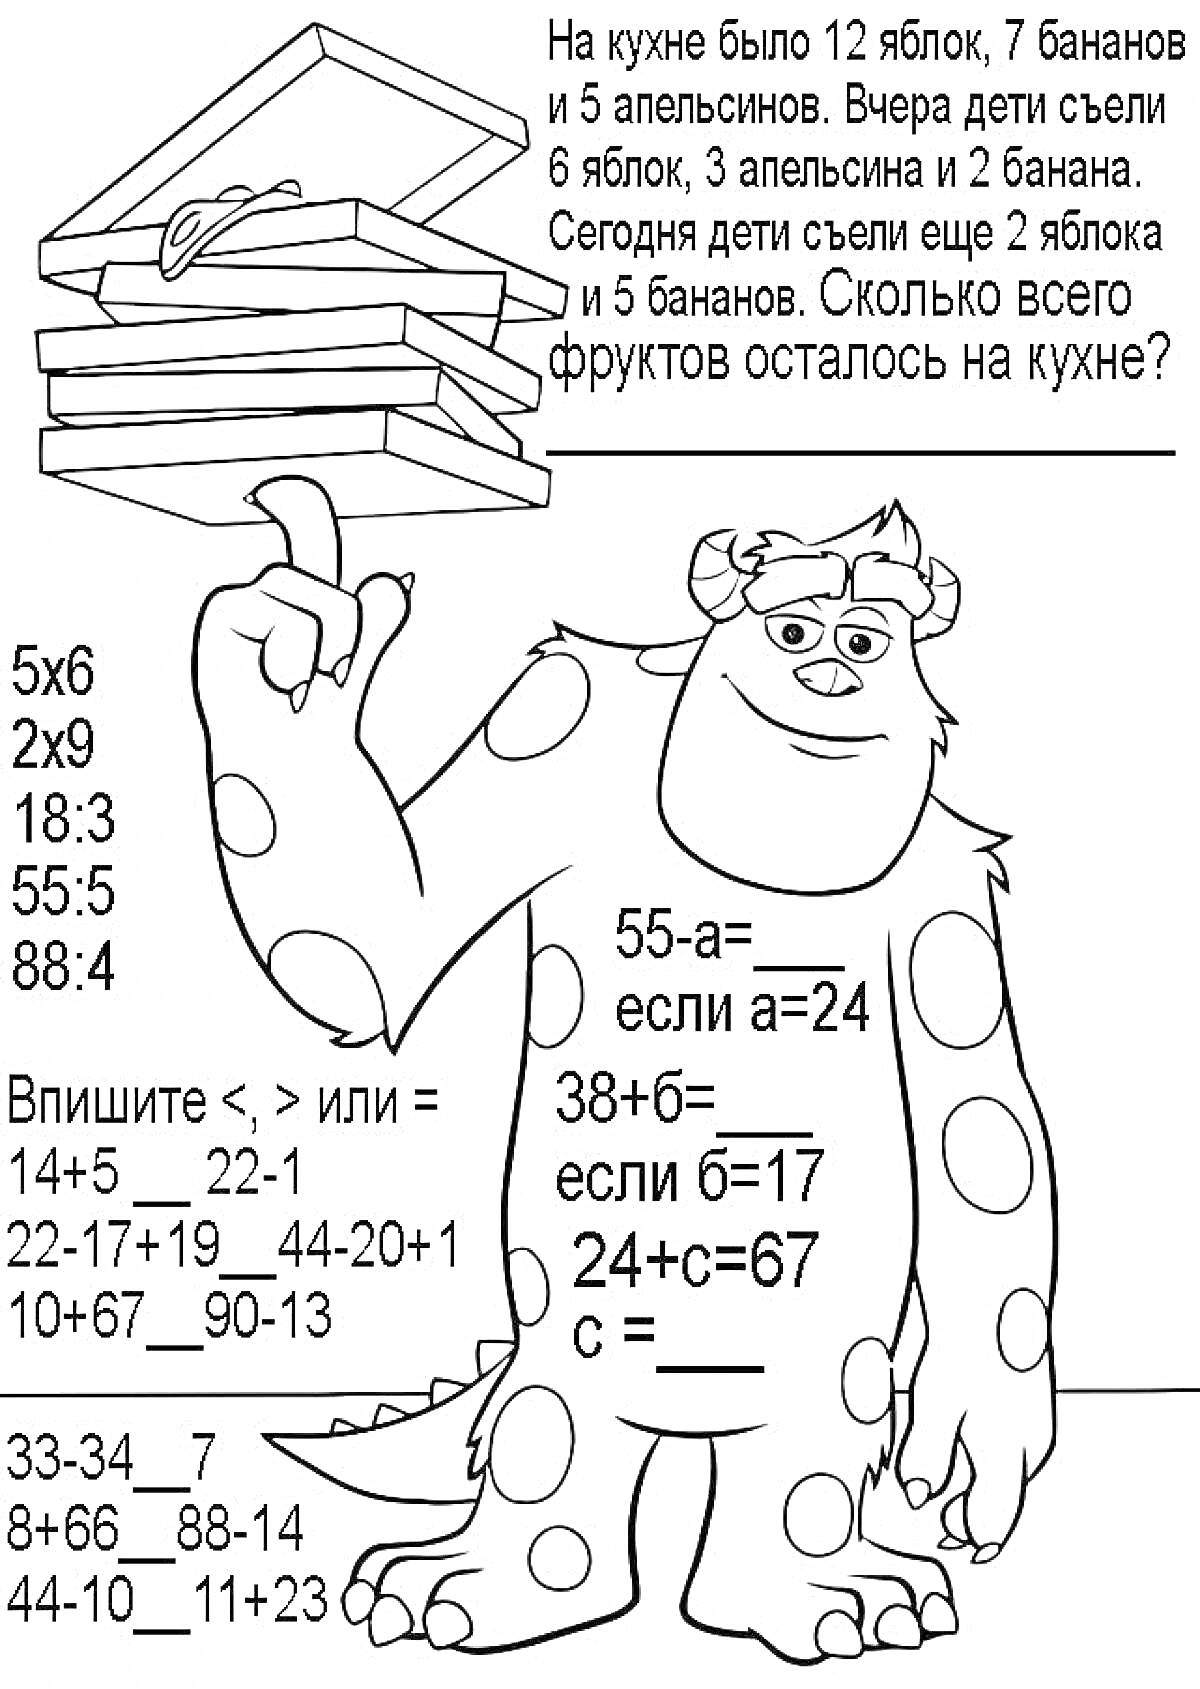 Раскраска Математическая раскраска для второго класса с монстром и заданиями на арифметику